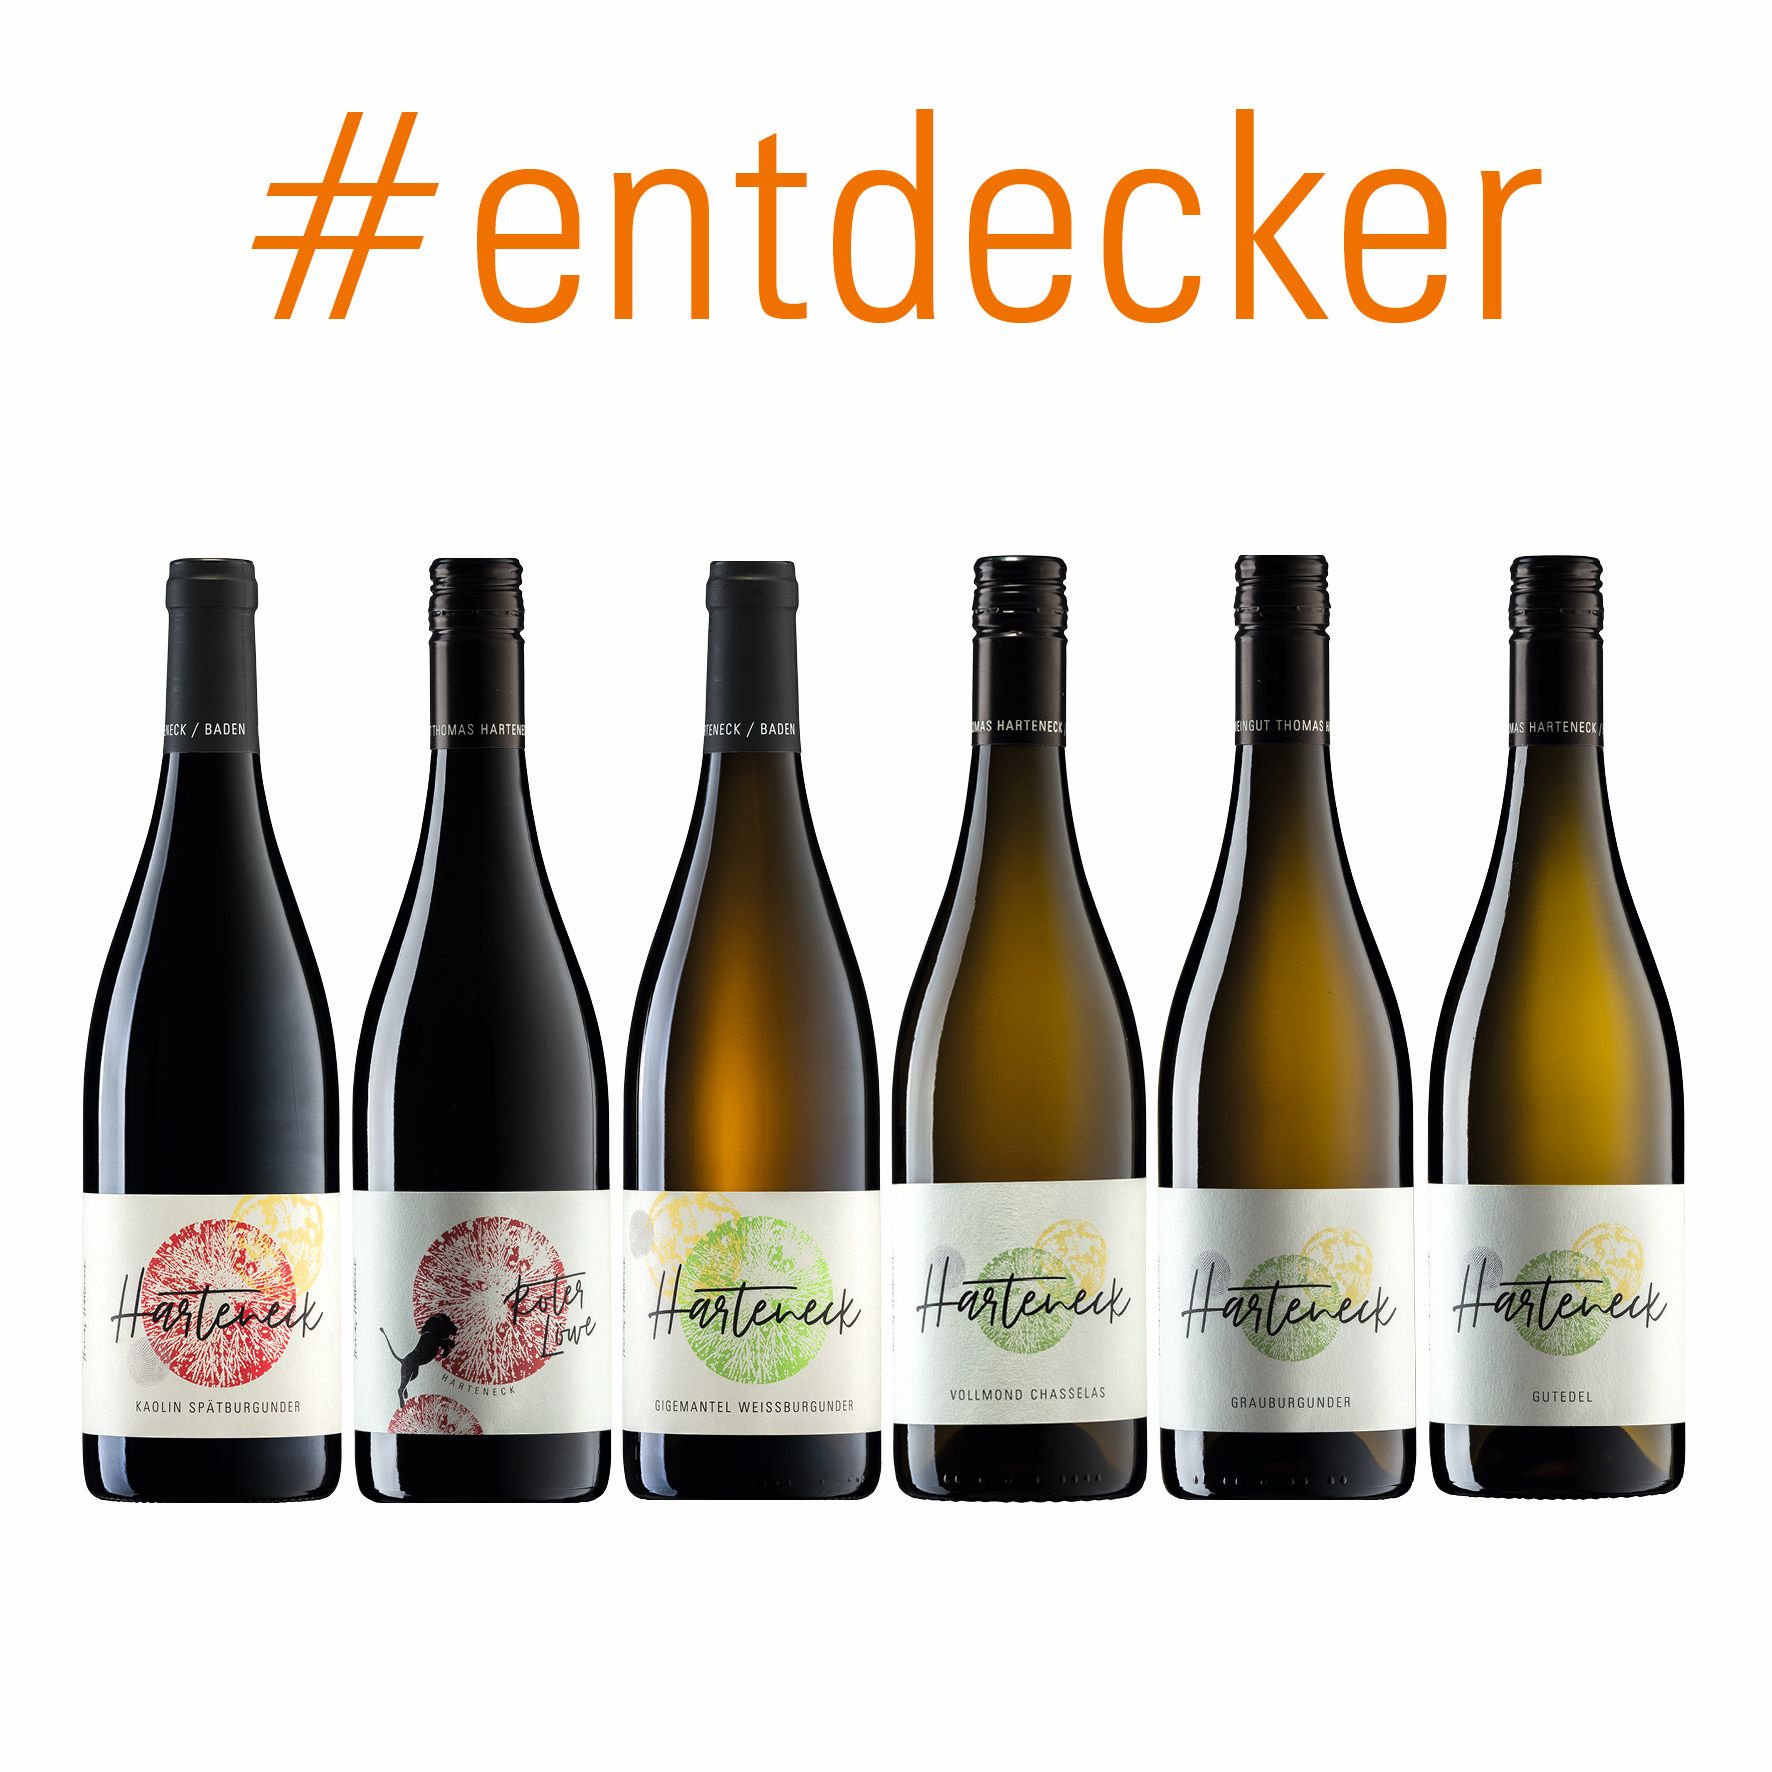 entdecker: 6 Flaschen portofrei! - Harteneck Thomas / / Natural Wein / / Biodynamisch